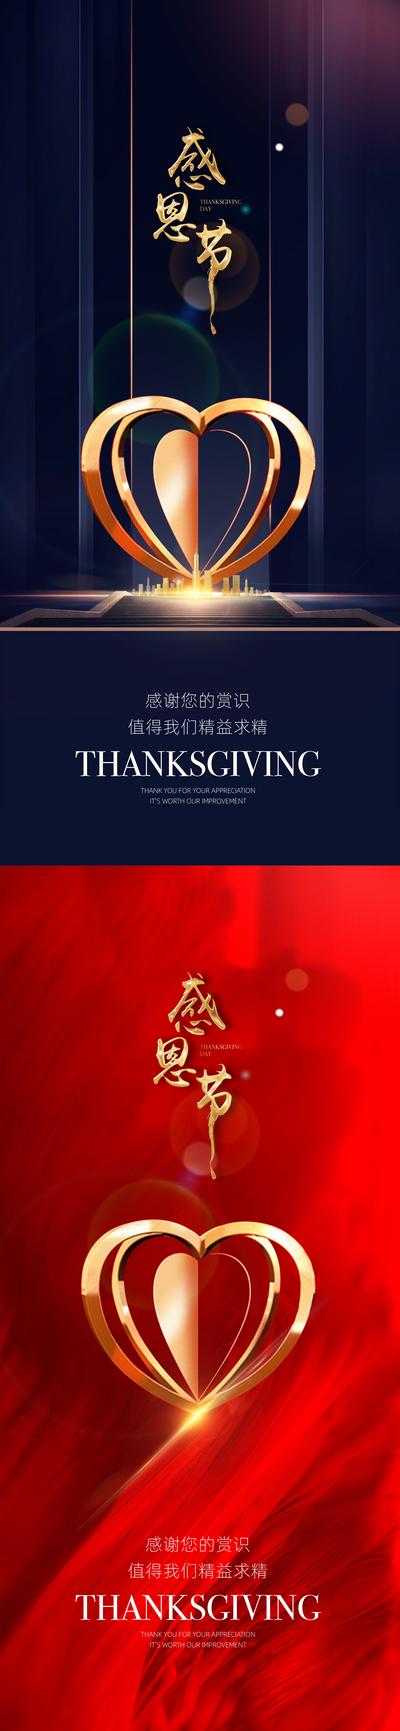 【南门网】海报  房地产  系列    感恩节  公历节日   金属爱心  光影   质感